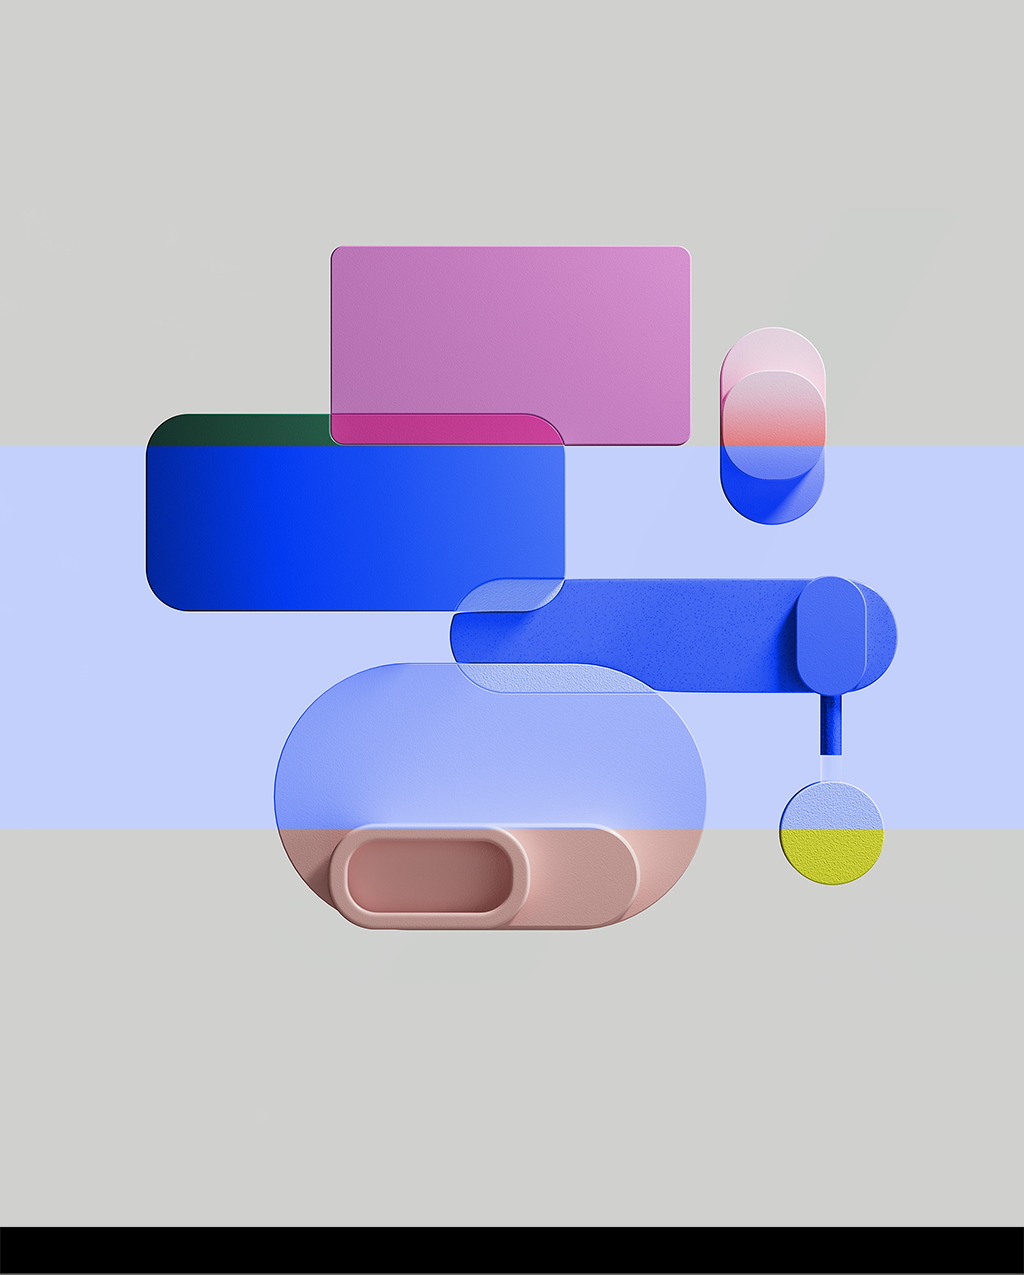 Abstrakte Sprechblasen in verschiedenen Farben

